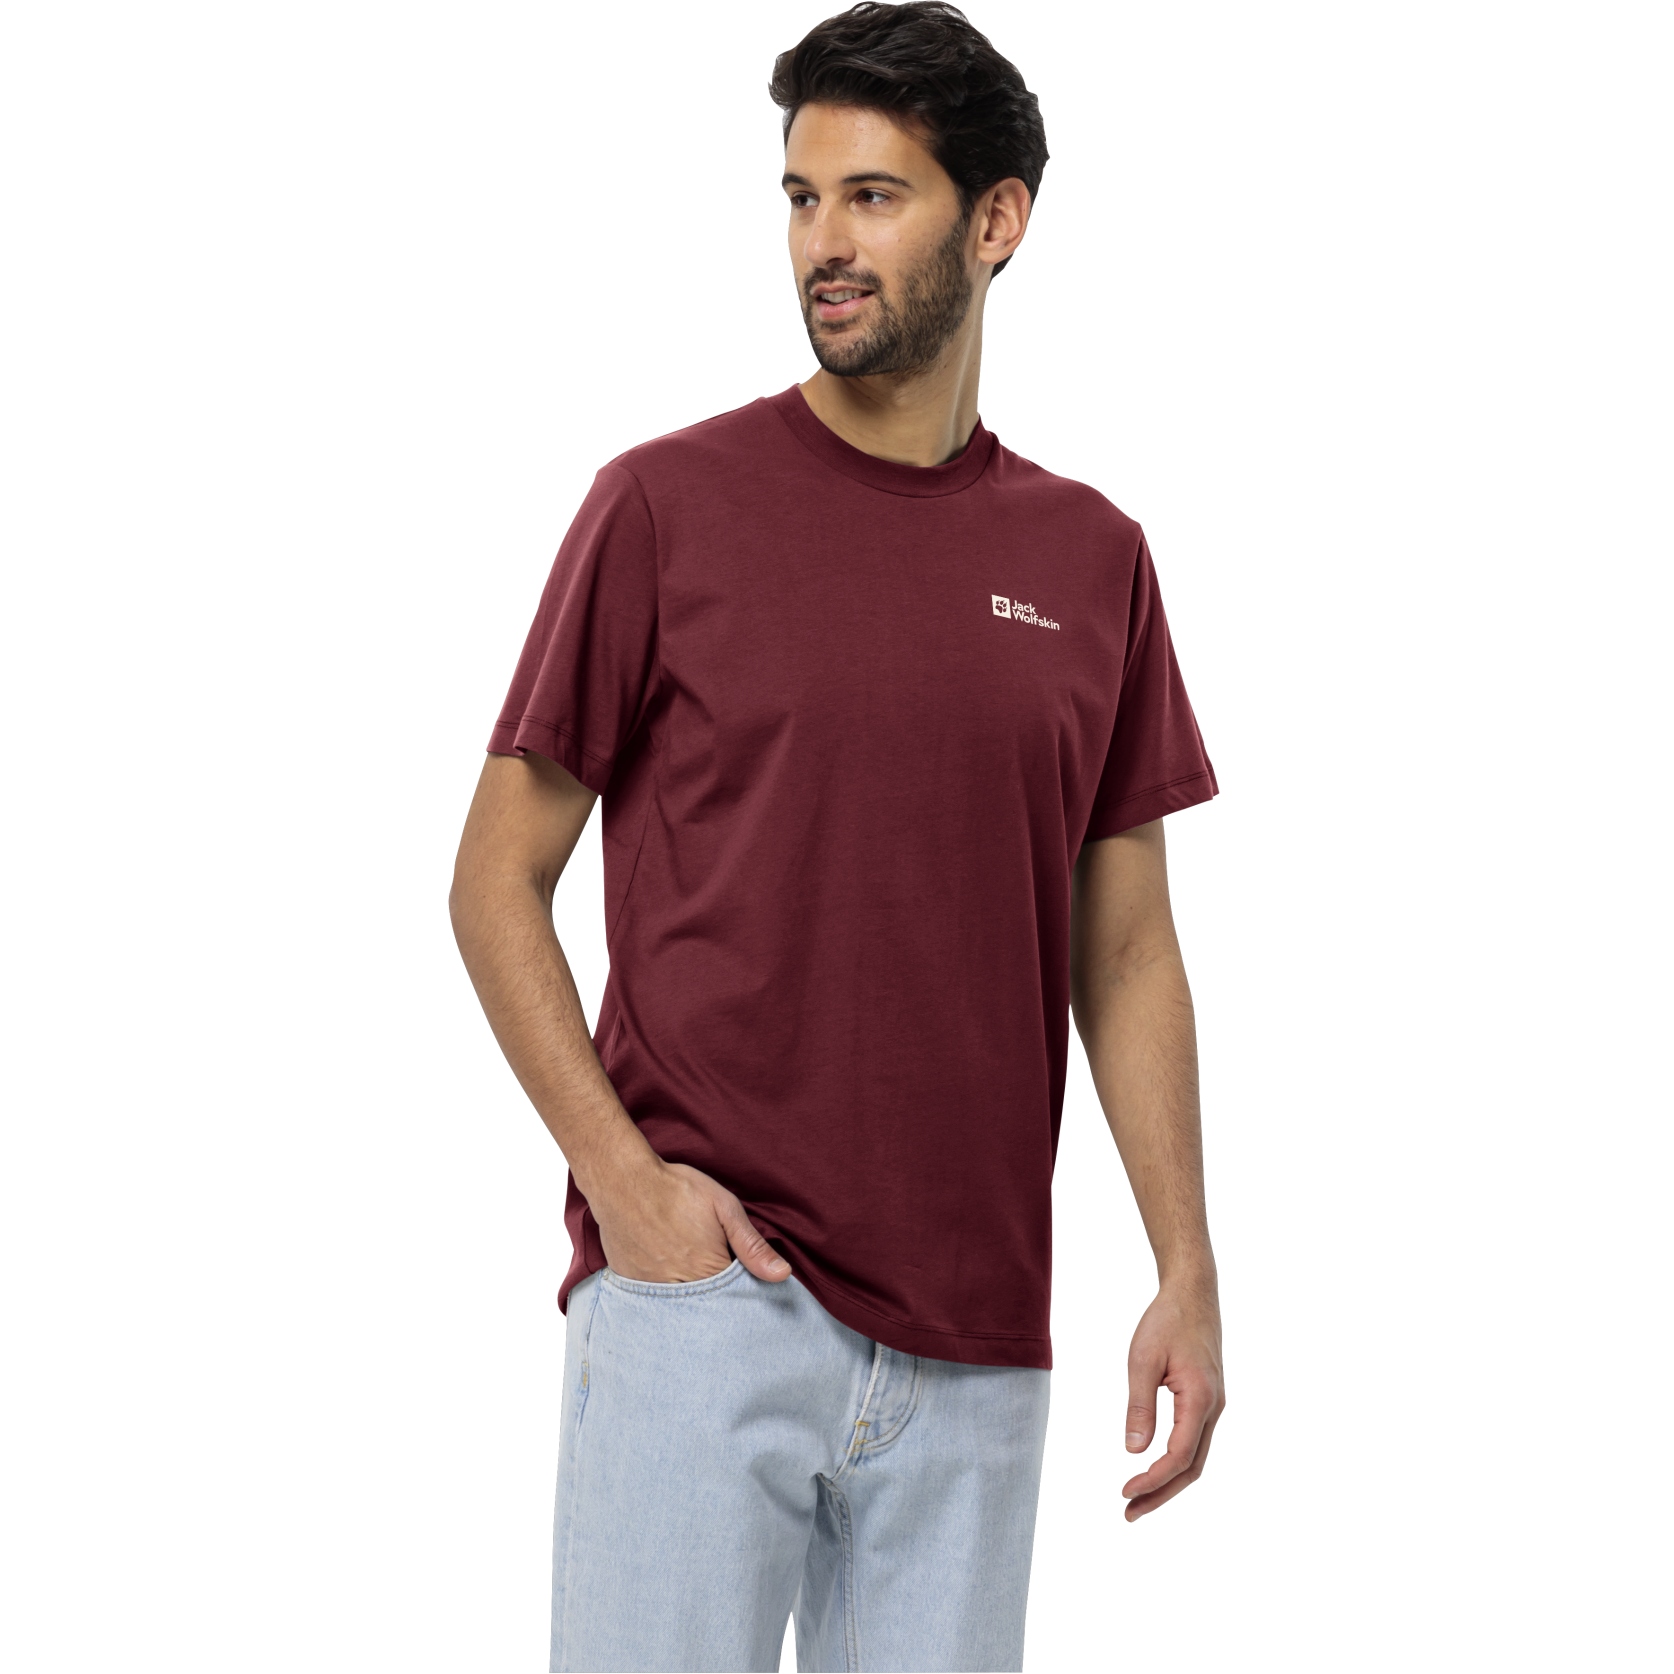 Produktbild von Jack Wolfskin Essential T-Shirt Herren - deep ruby